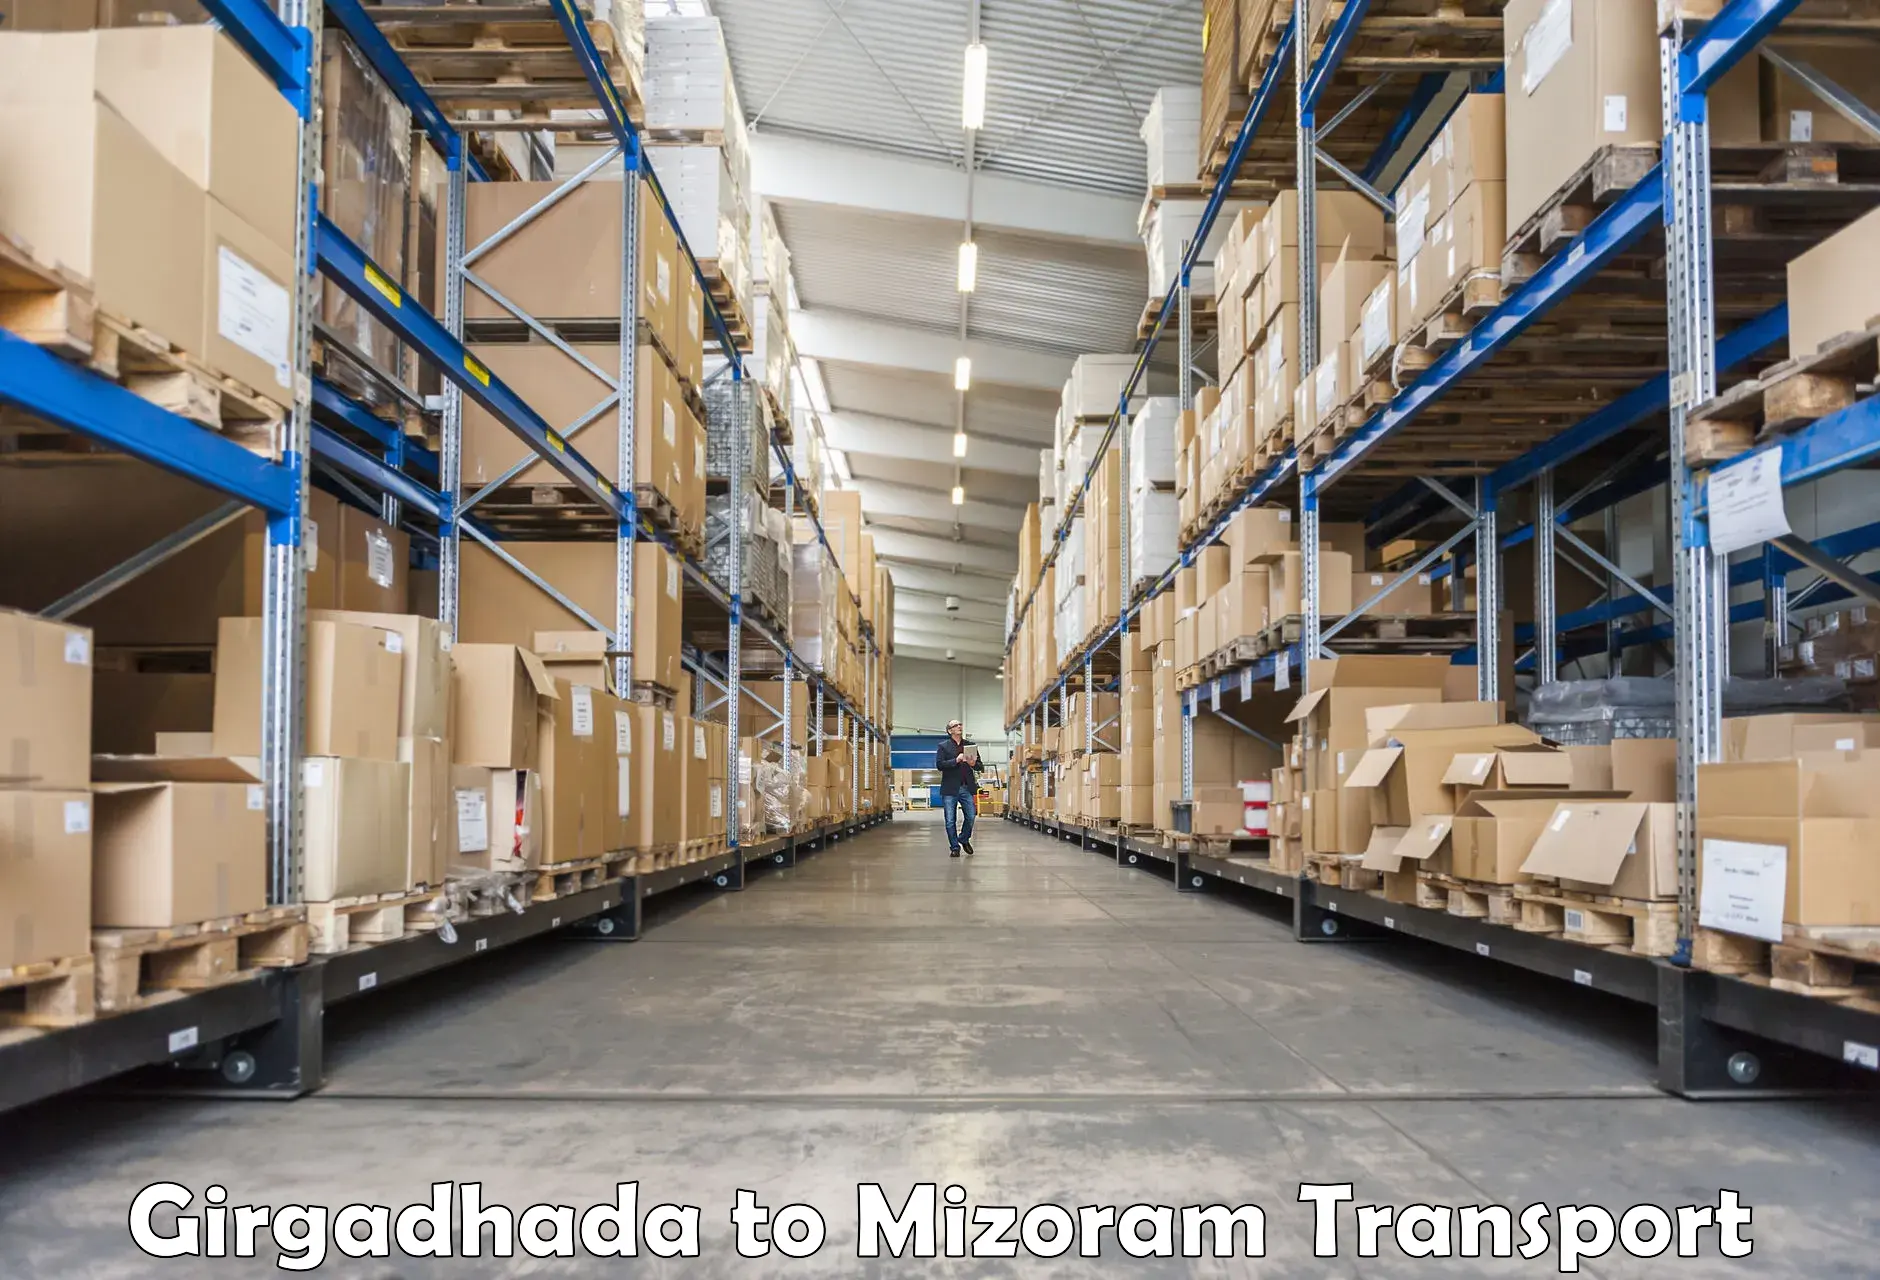 Nearest transport service Girgadhada to Thenzawl